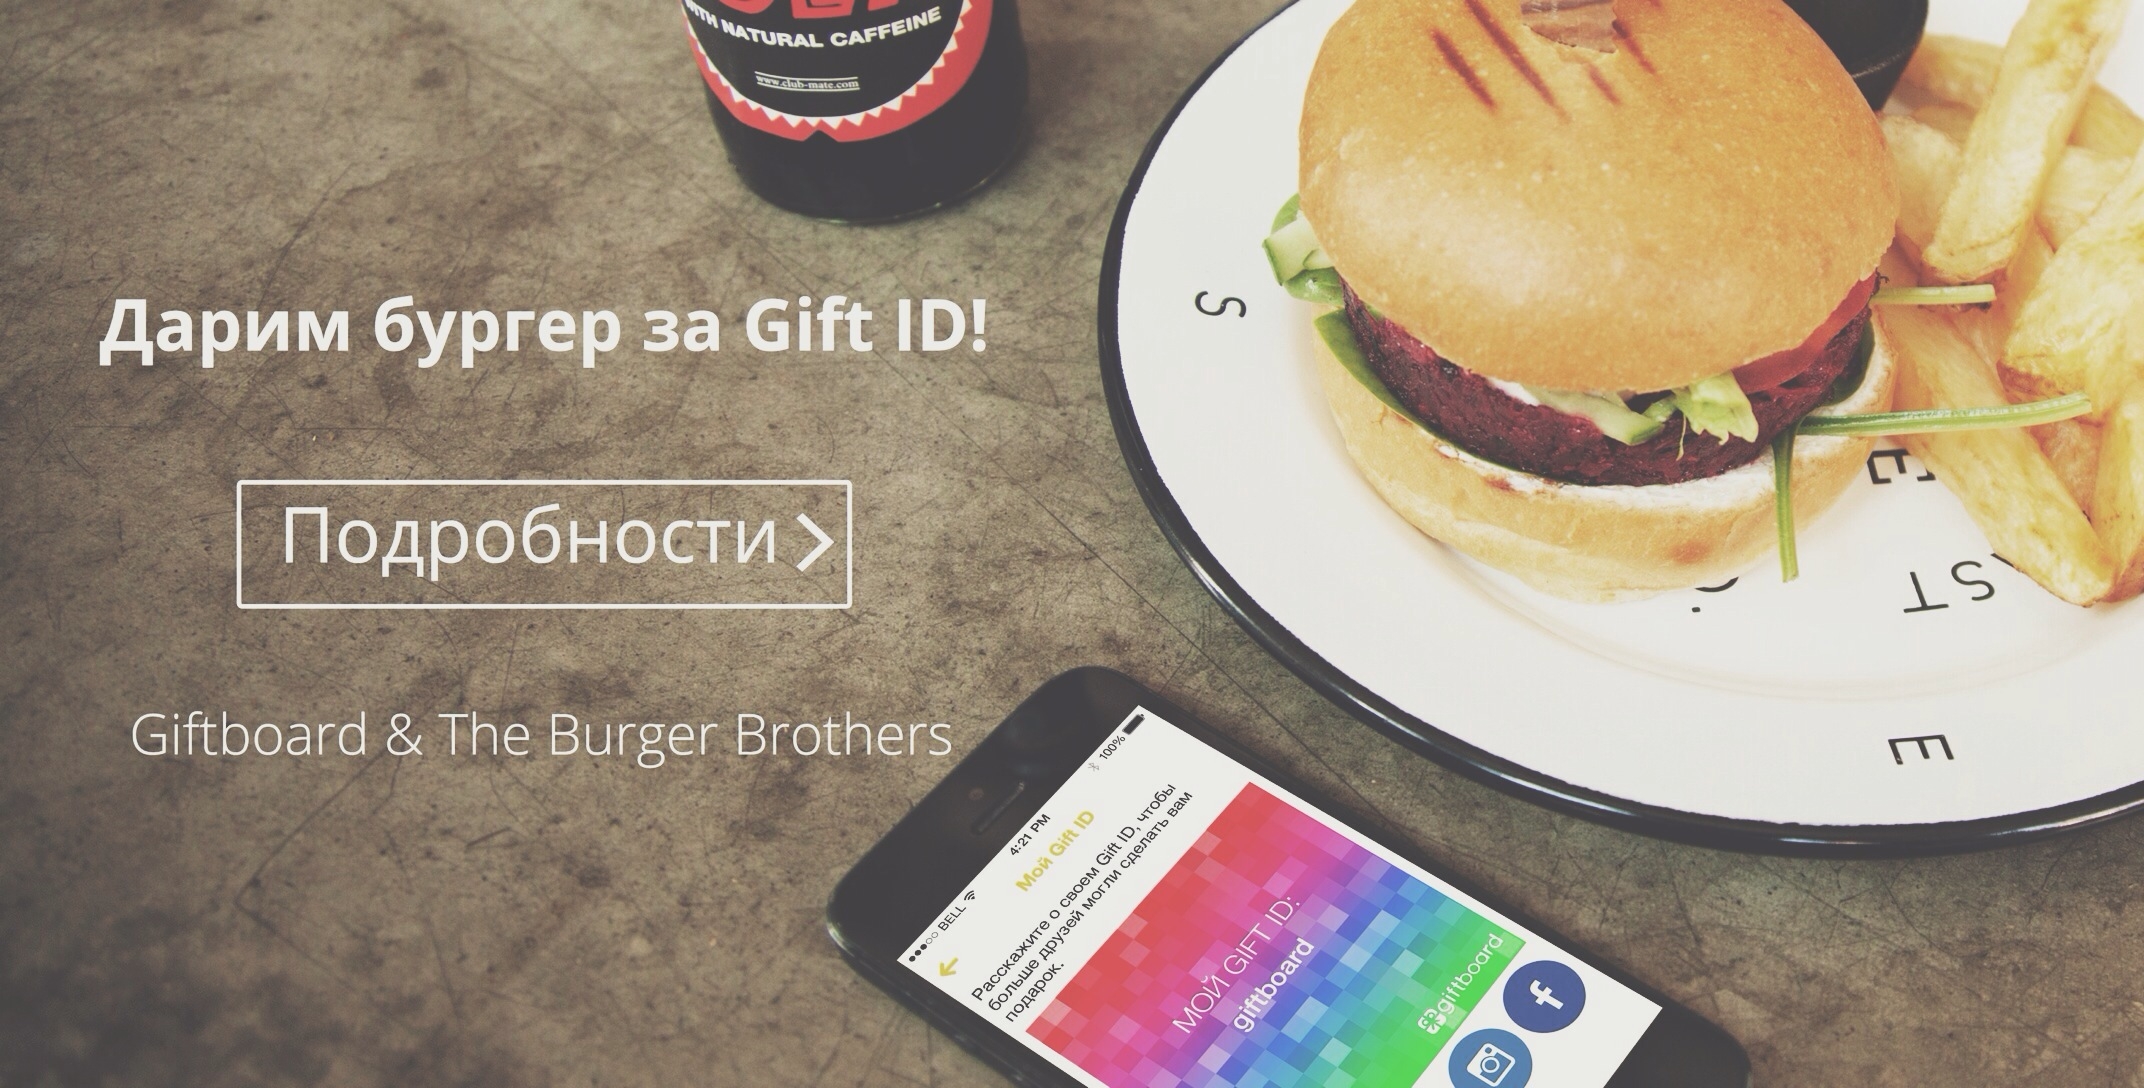 Бургер за Gift ID